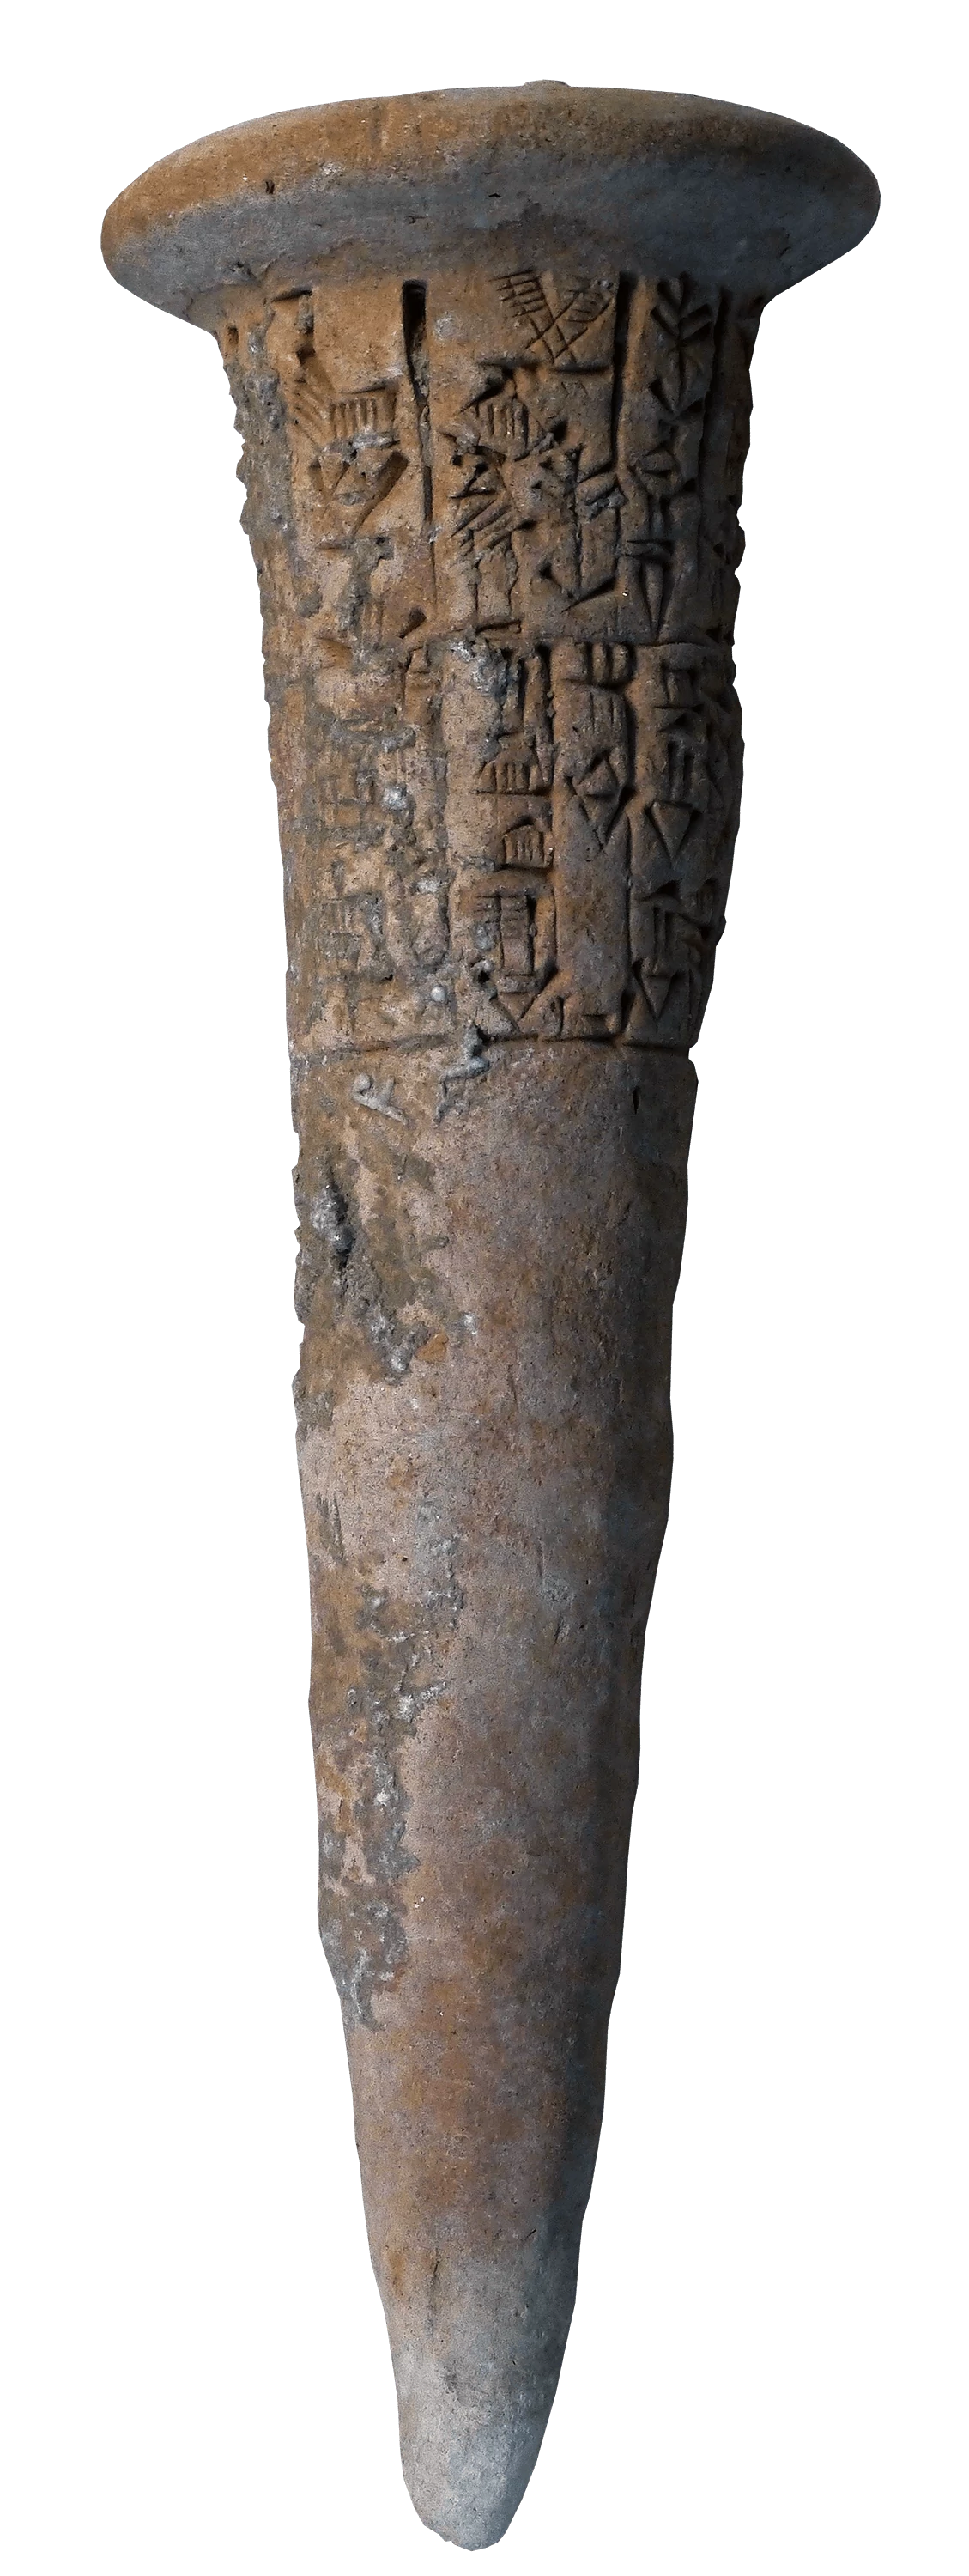 Clay Nails, a Treaty of Fraternity, Mesopotamia